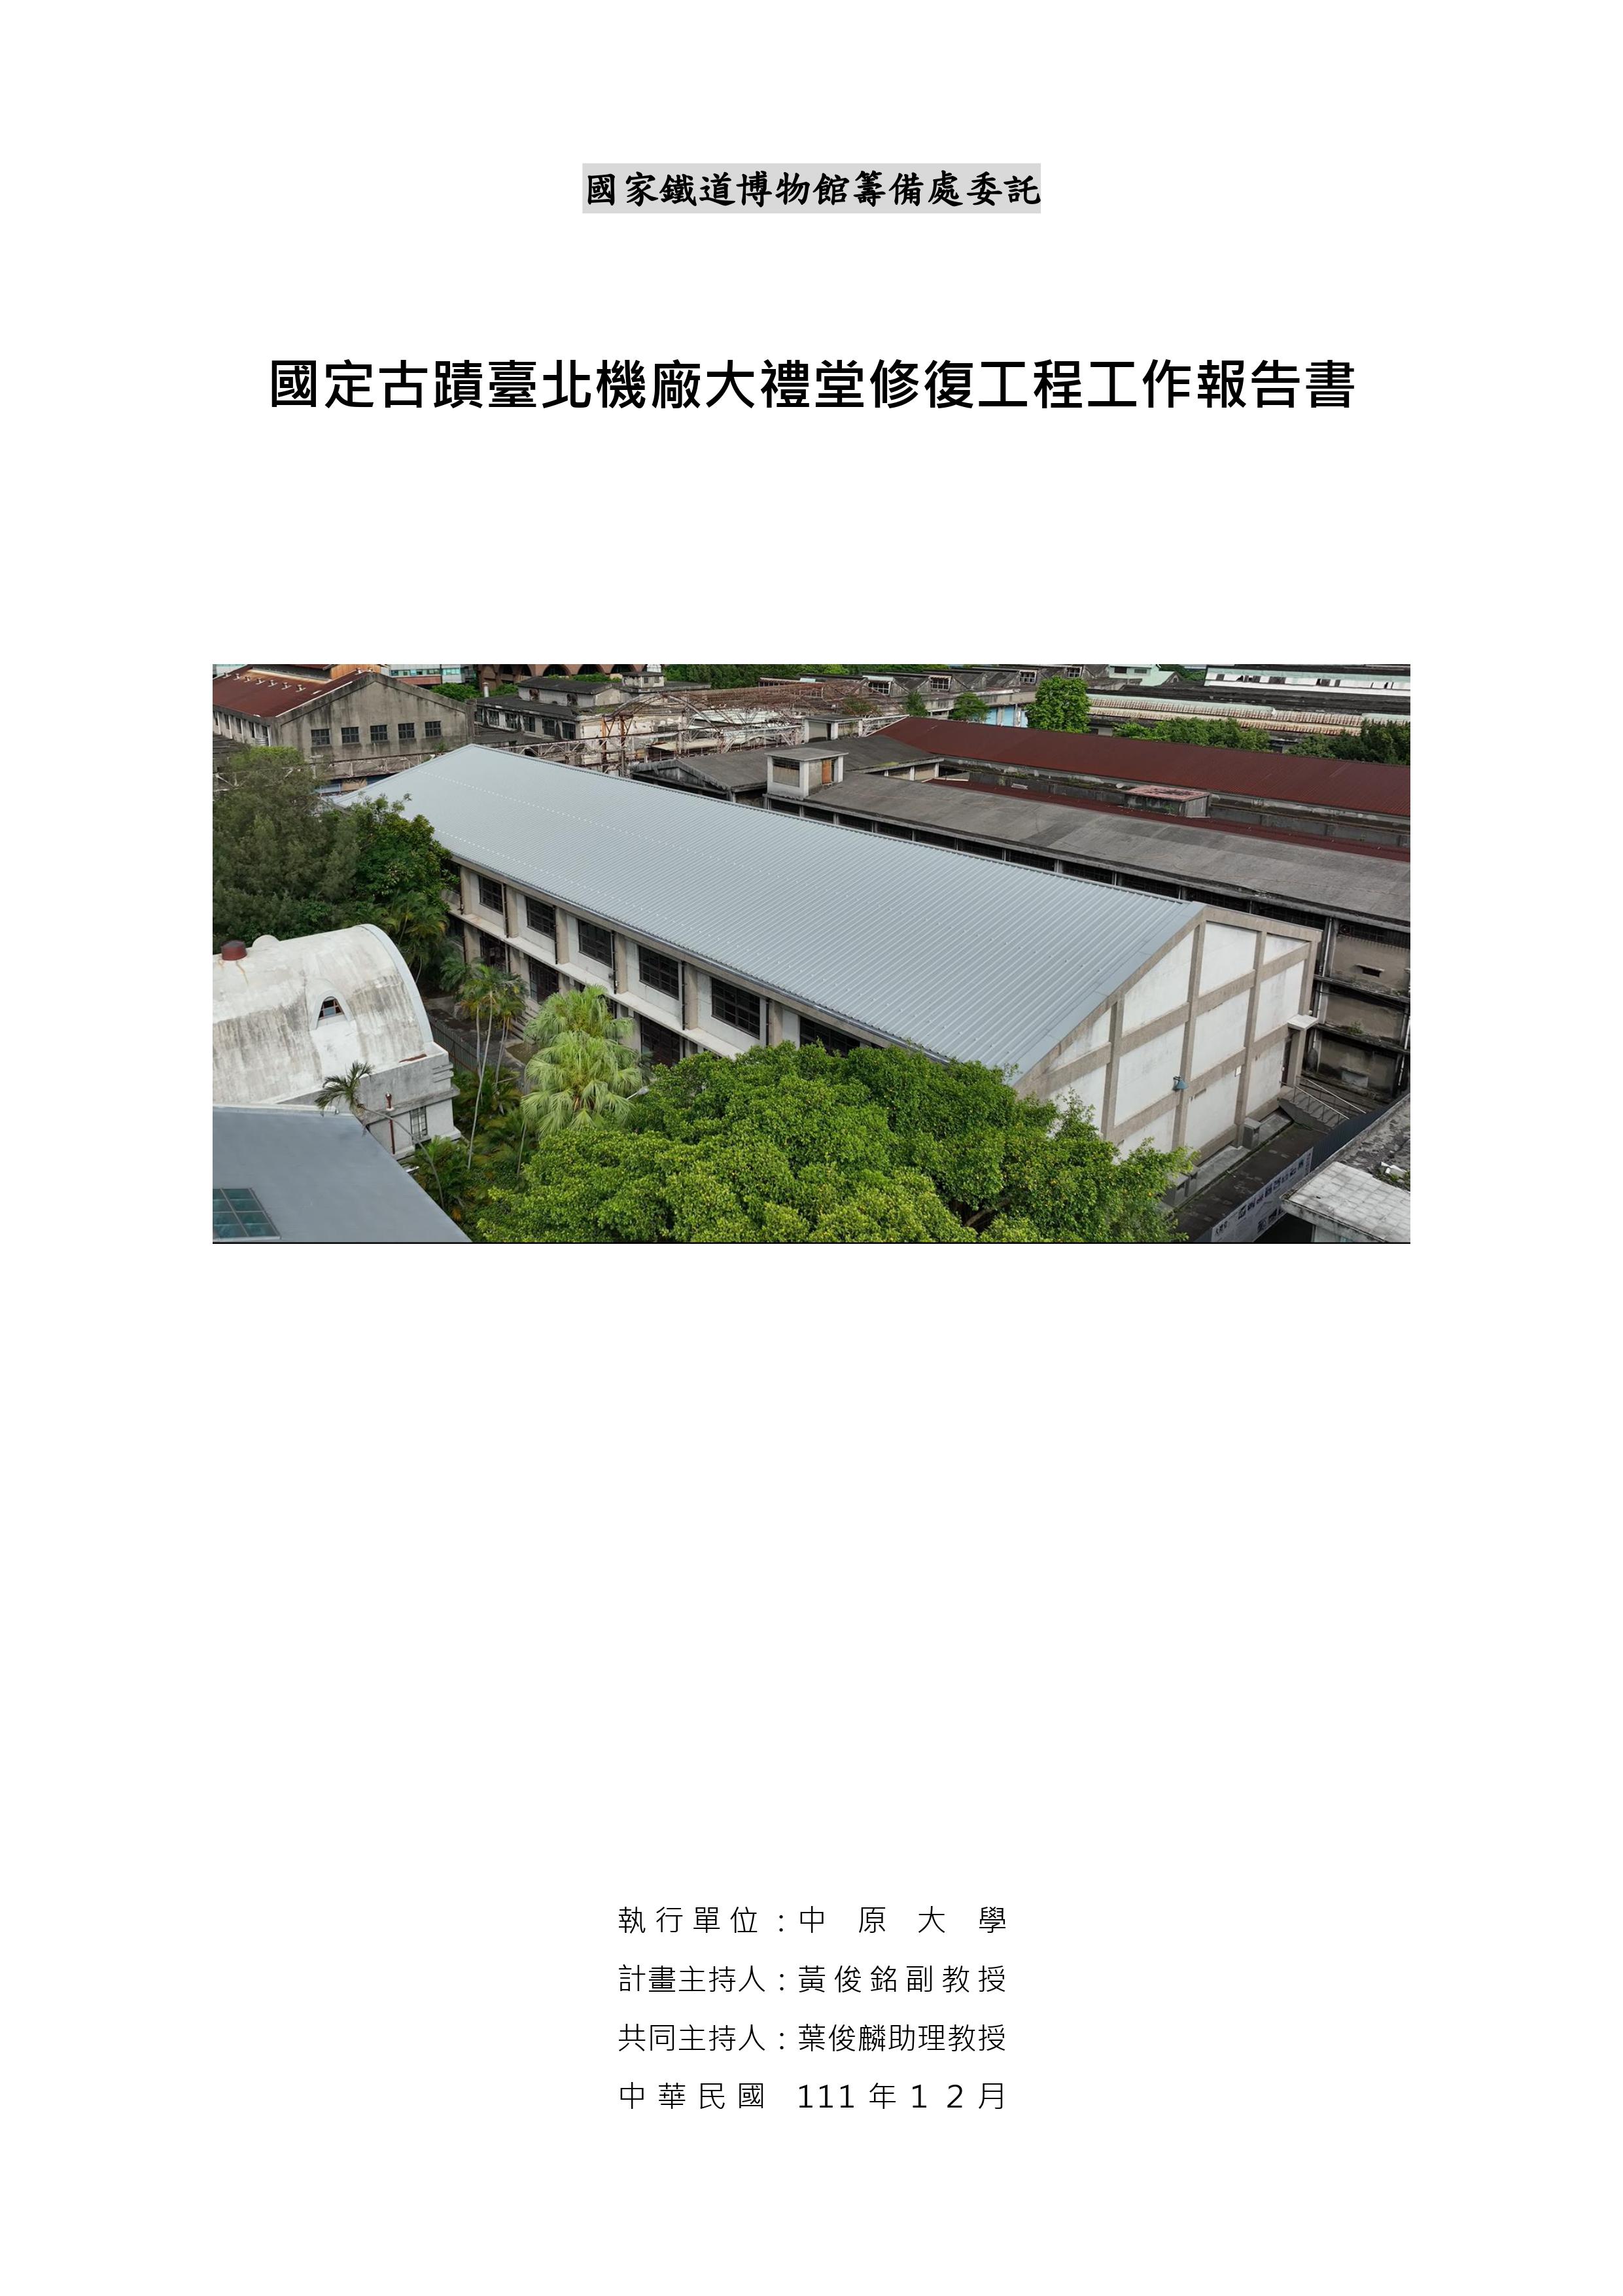 國定古蹟臺北機廠大禮堂修復工程工作報告書